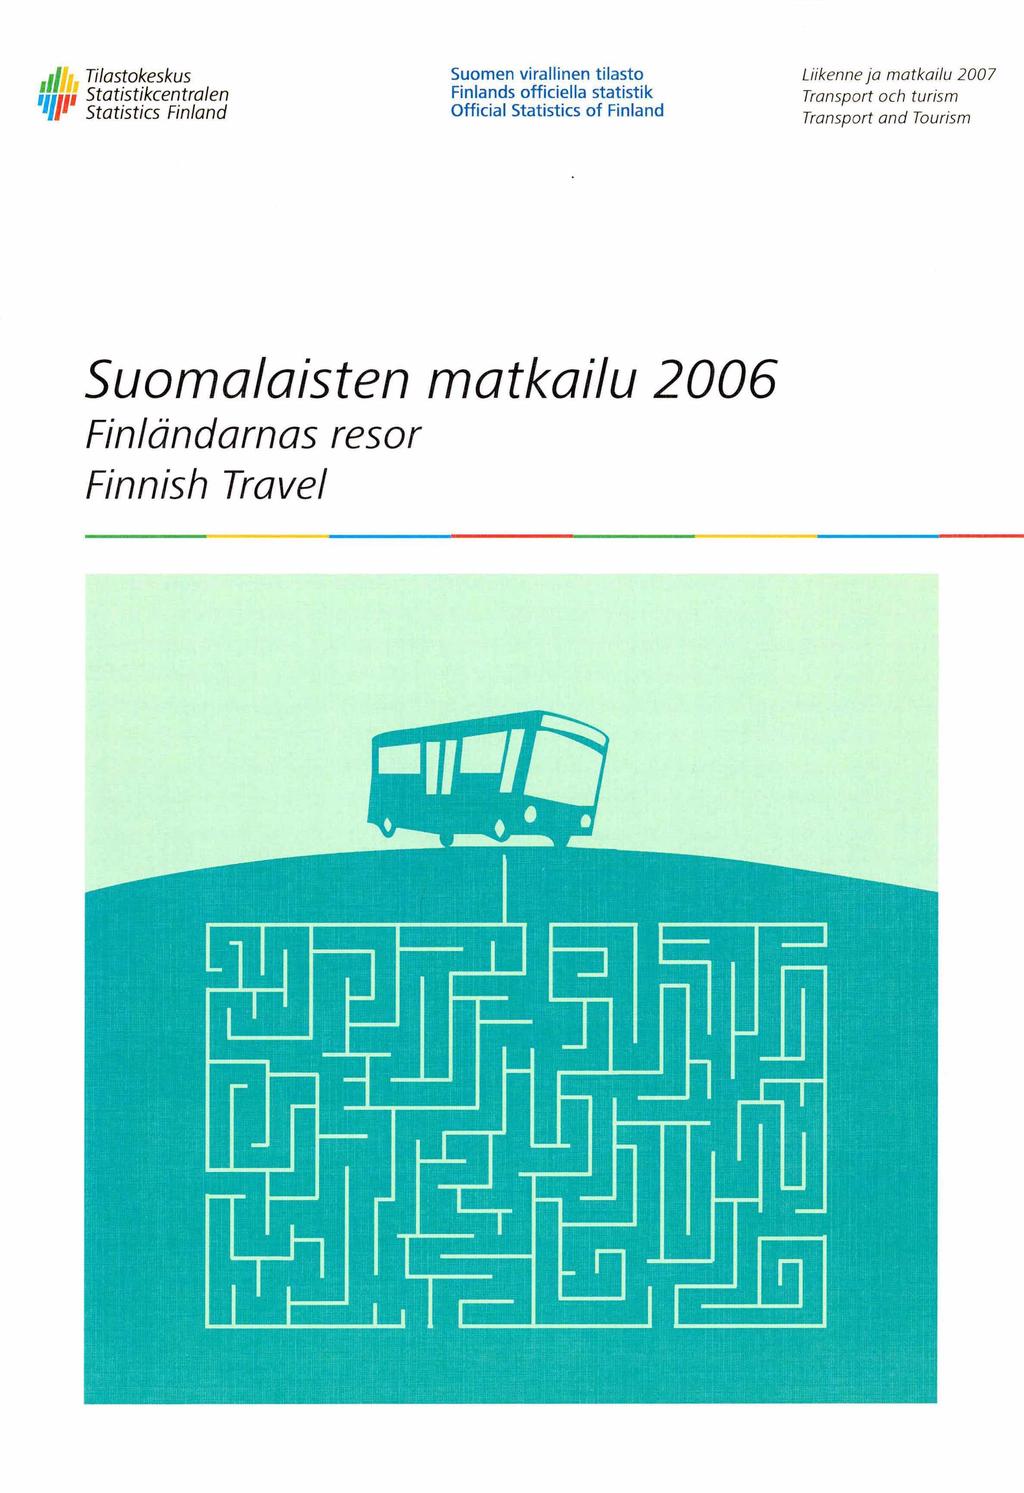 , ti Tilastokeskus U lin Statistikcentralen 'll1 Statistics Finland Liikenne ja matkailu 2007